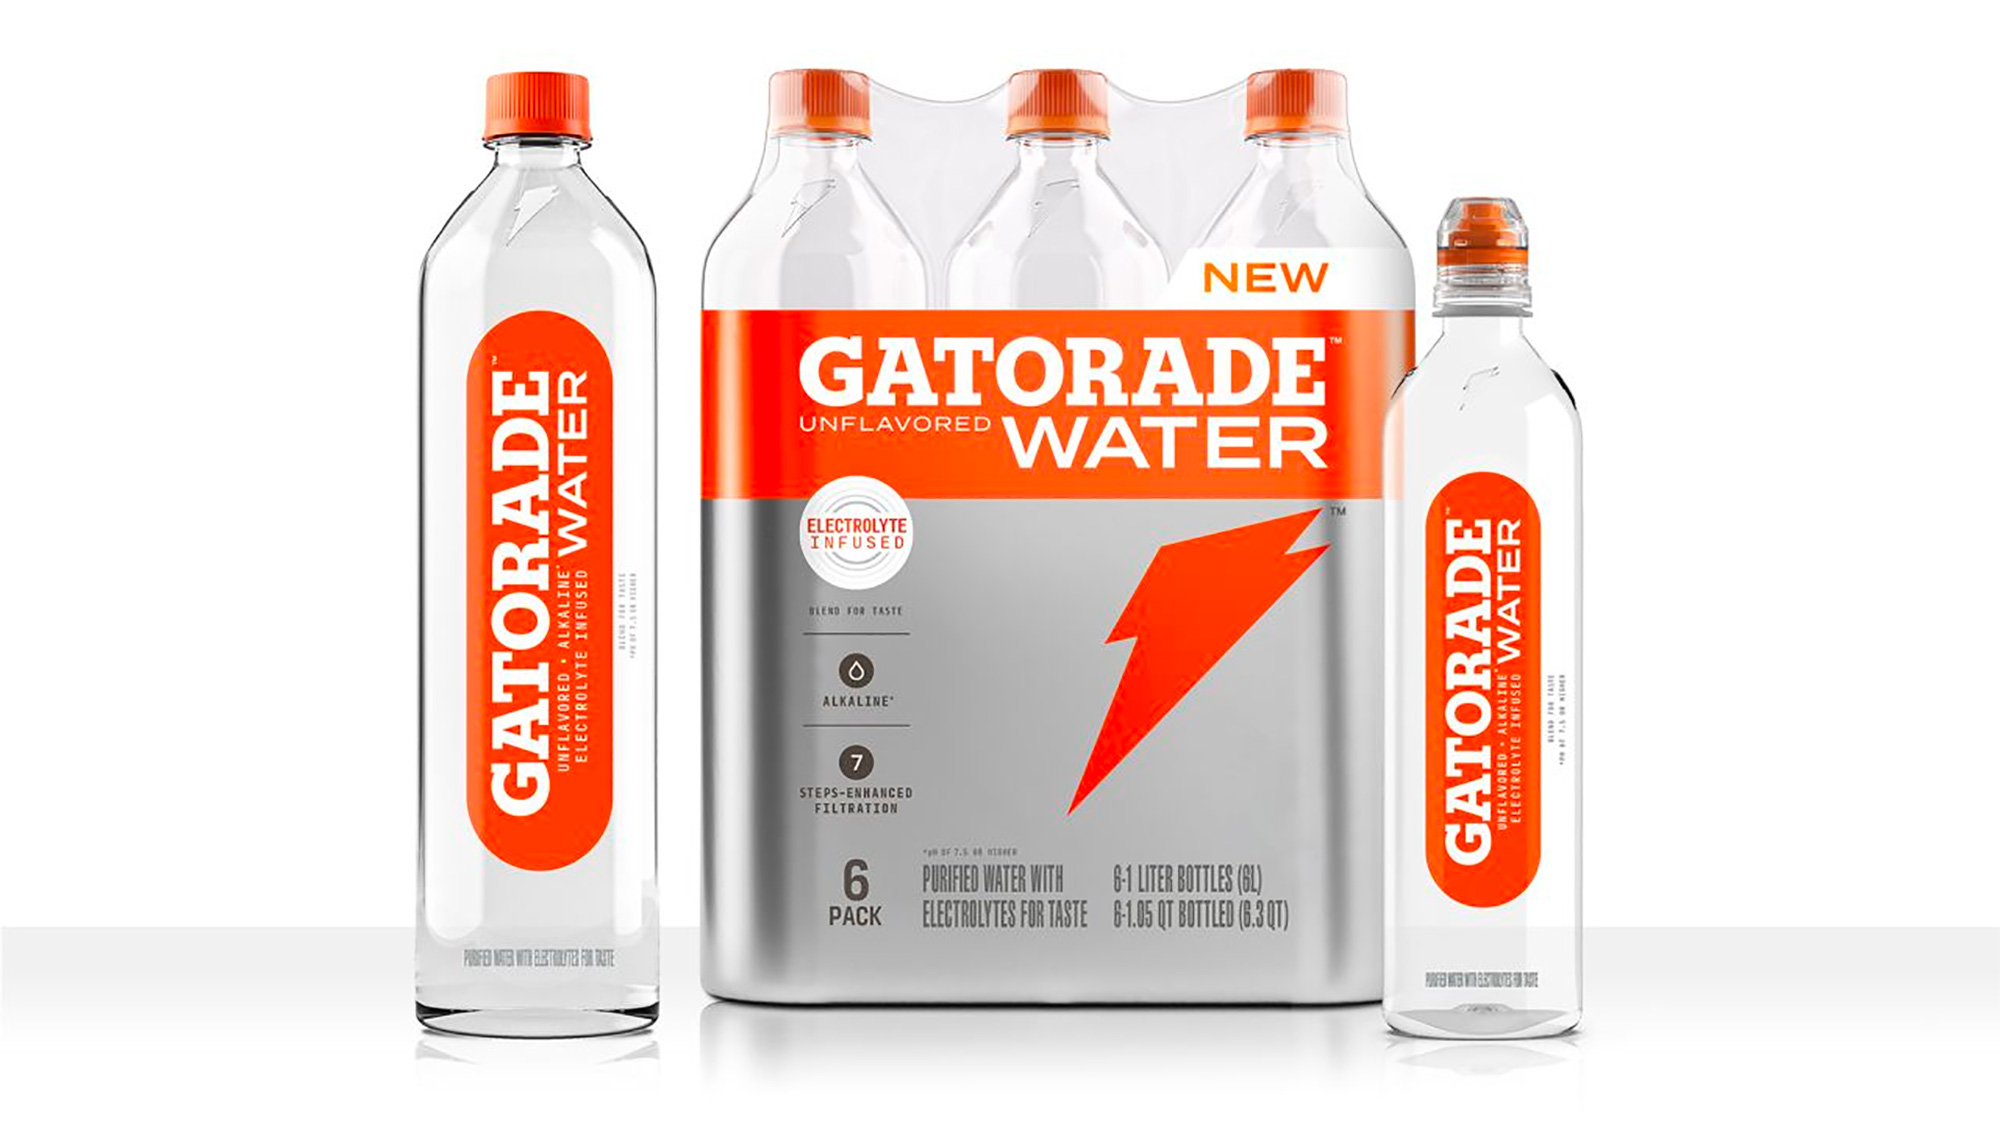 What if Gatorade Made Water?